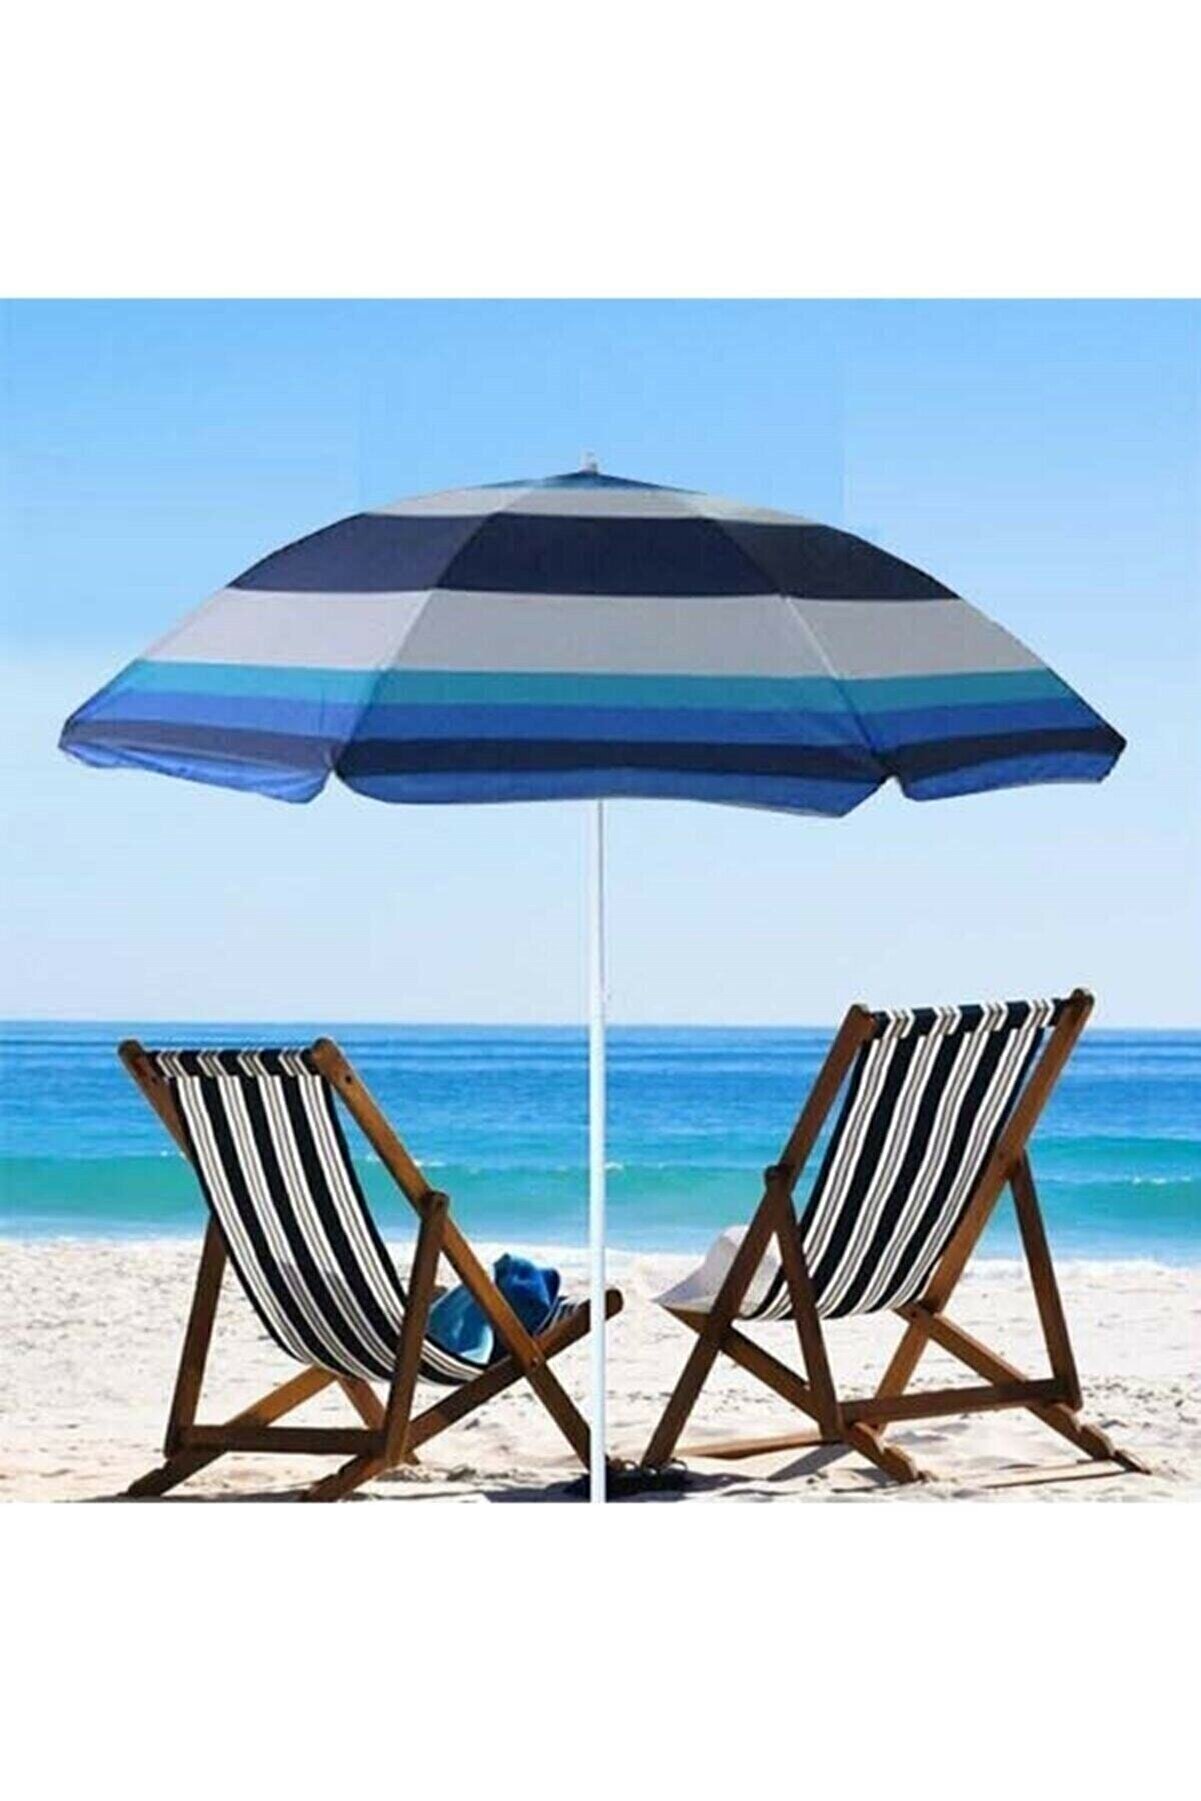 KILIÇOĞLU Plaj Deniz Bahçe Balkon Piknik Kamp Güneş Şemsiyesi Katlanır Mavi Beyaz 180cm